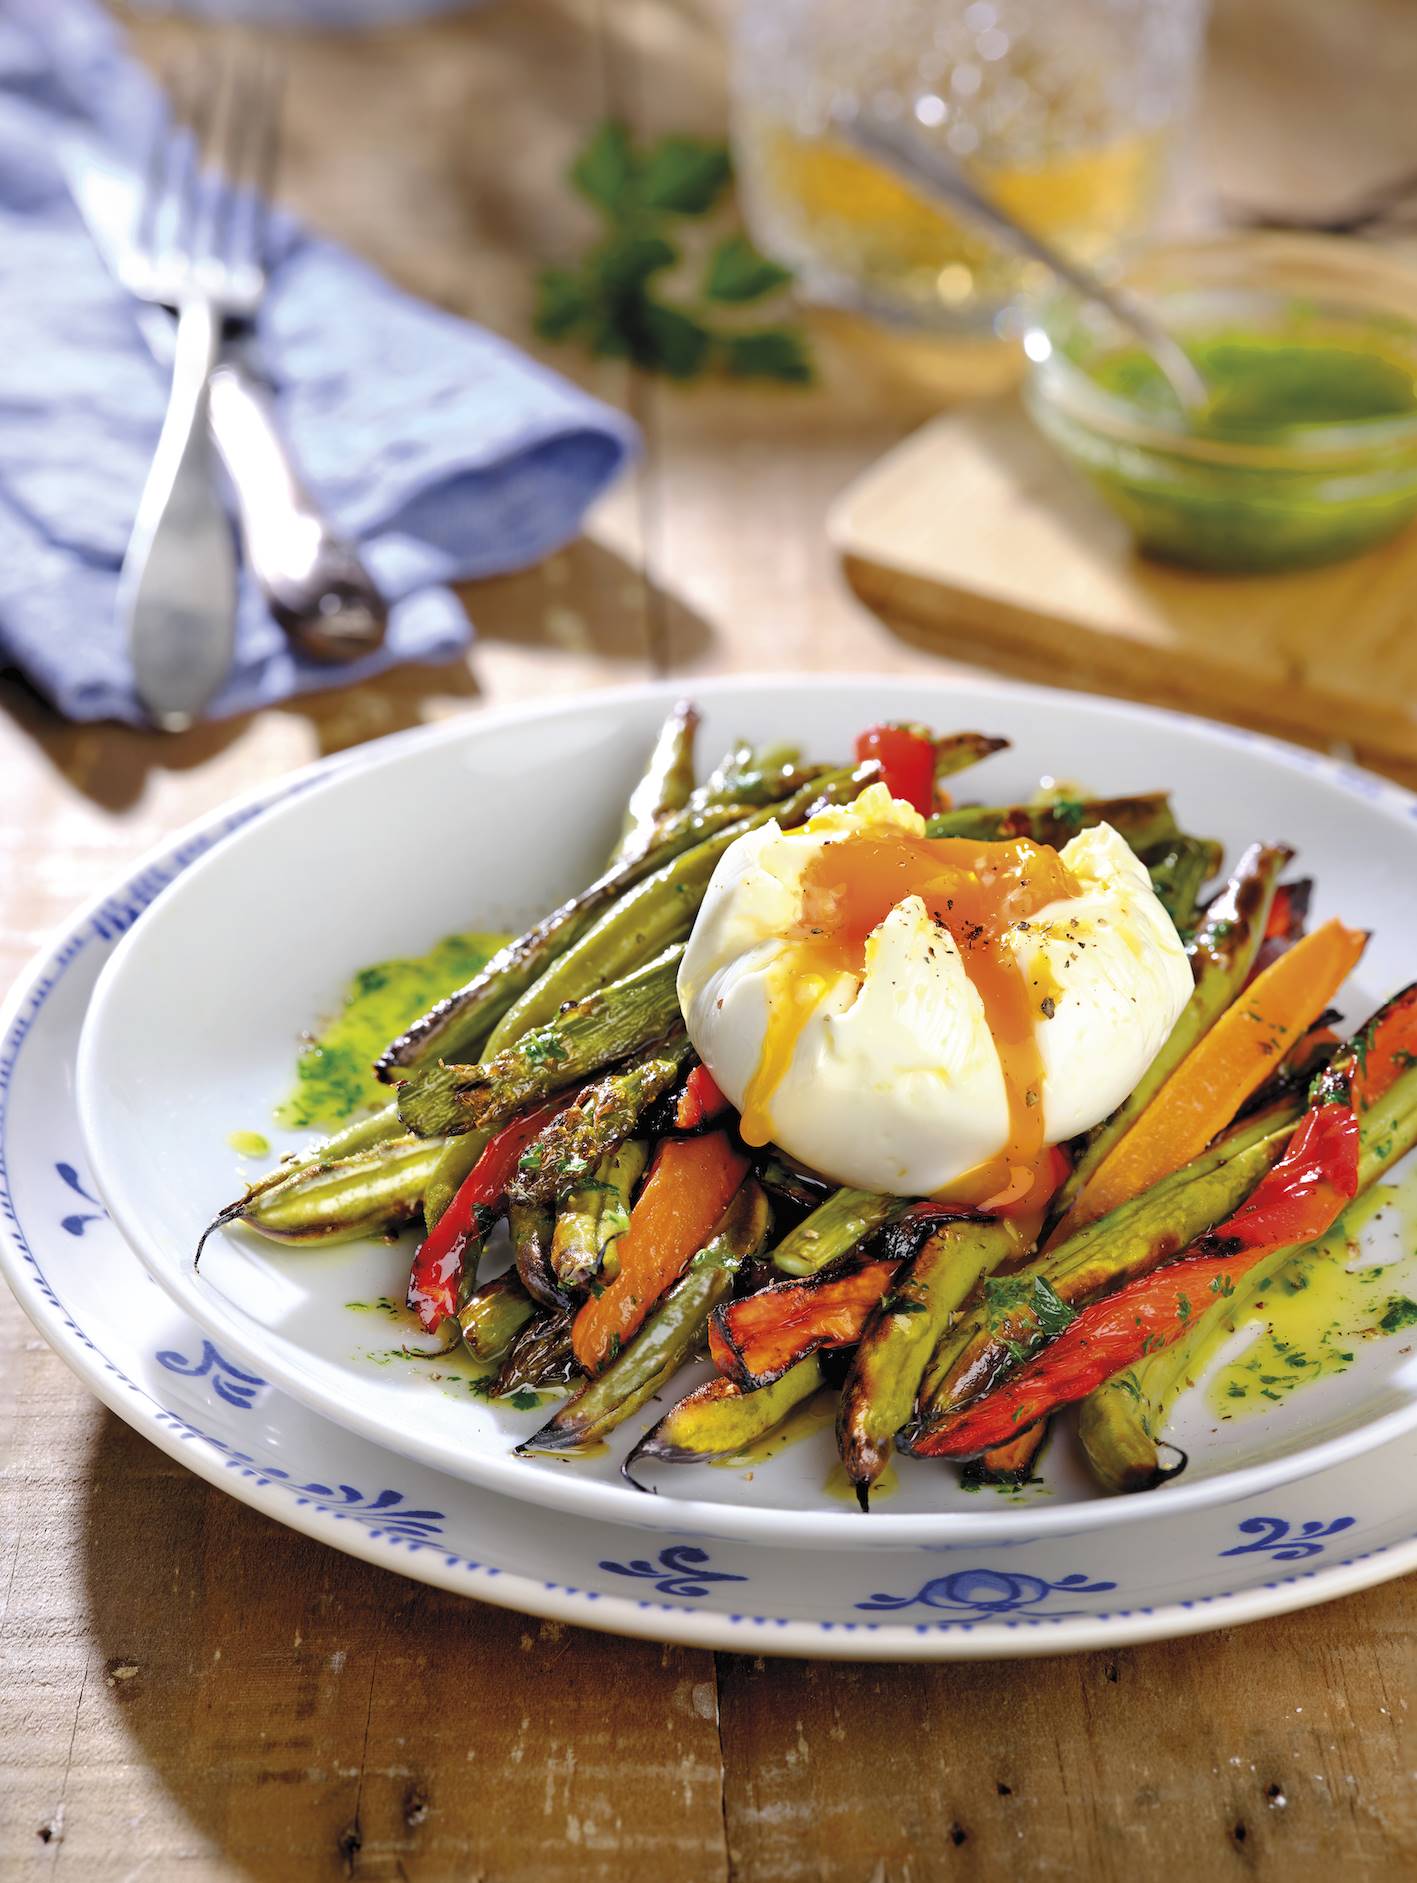 Receta baja en calorías: verduras al horno con huevo poché.